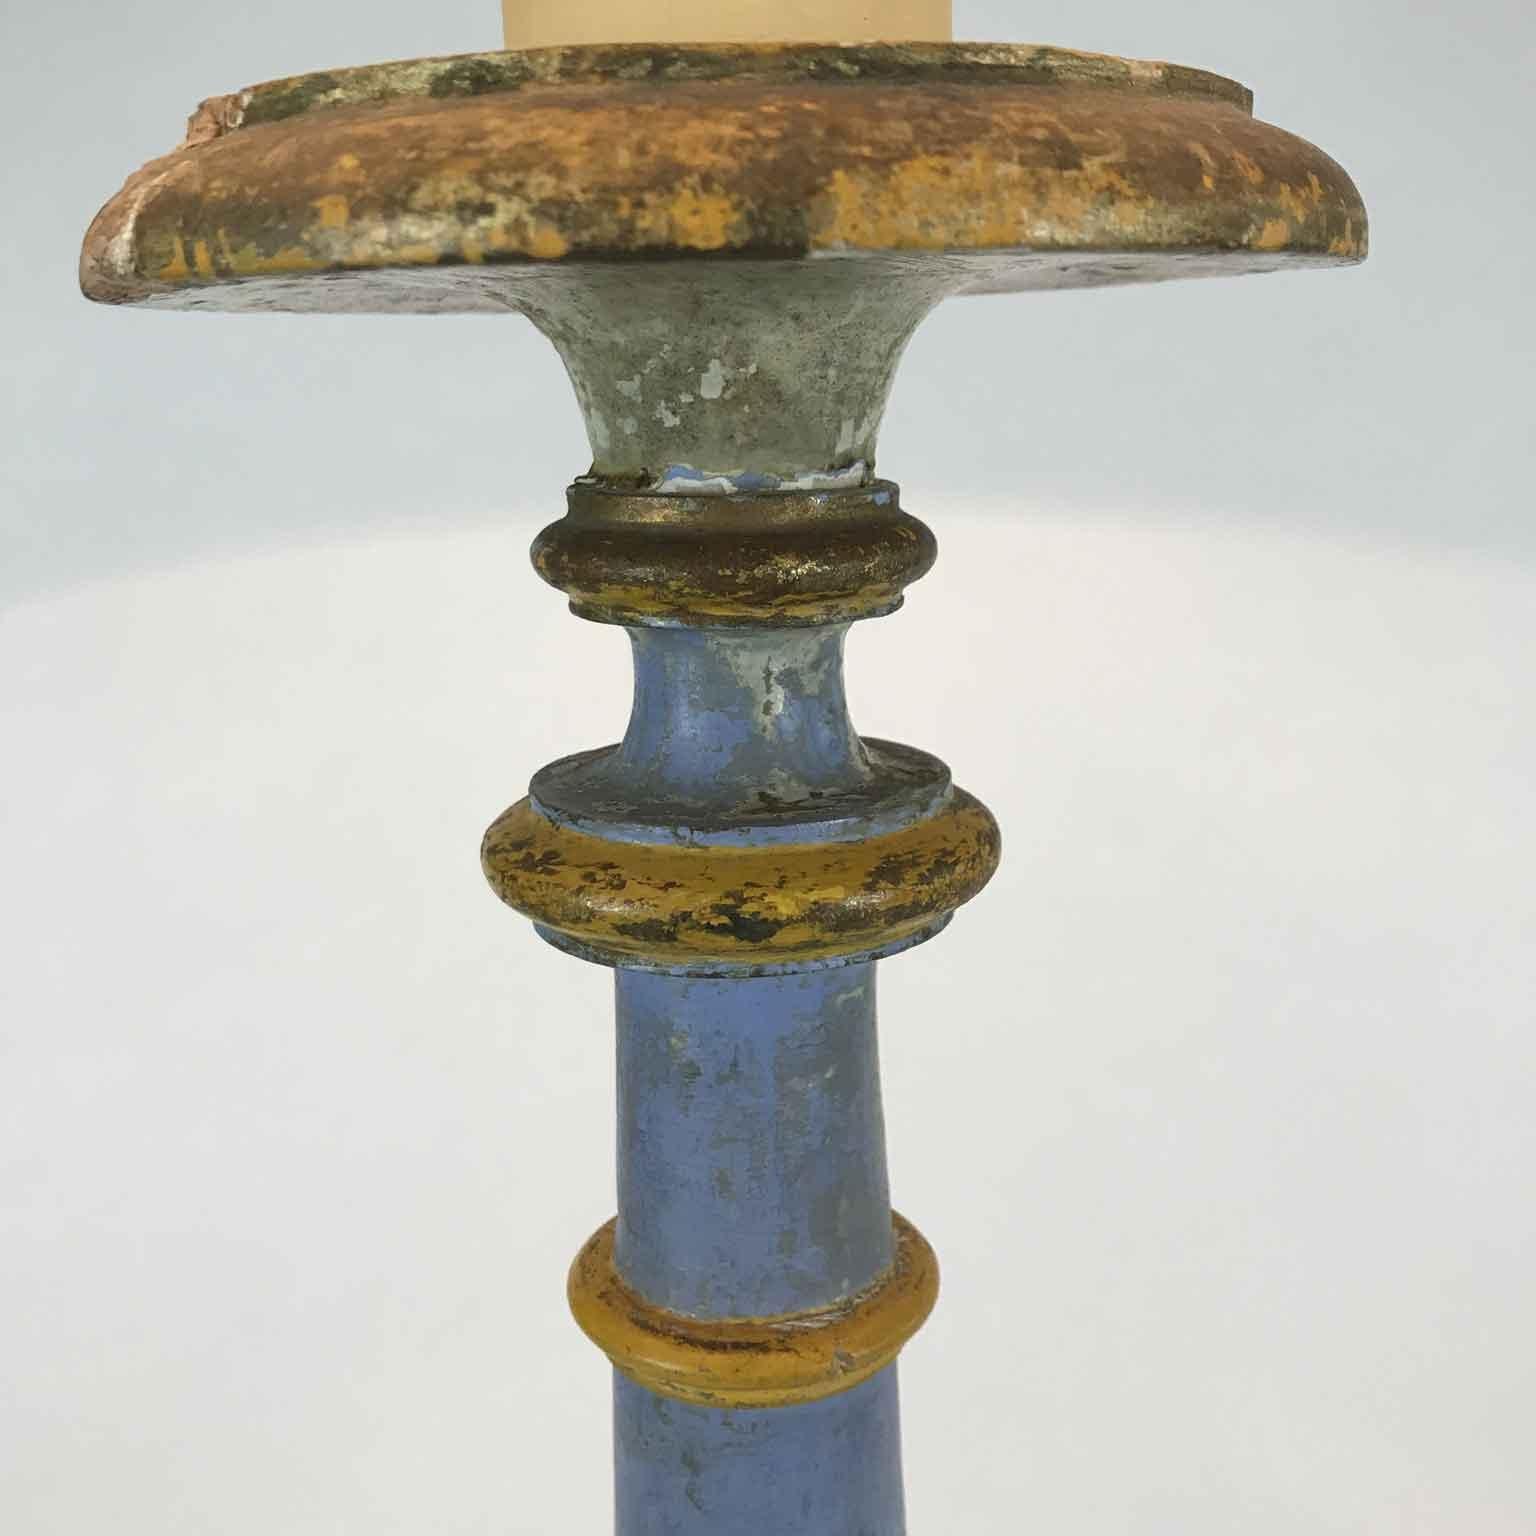 Paire de pieds de lampe de table néoclassiques italiens de Toscane, anciens bougeoirs circulaires Rocchetto en bois de pin peint en bleu et jaune de Sienne, câblés pour lampes. Les caches-lampe blancs sont destinés à l'affichage uniquement et ne